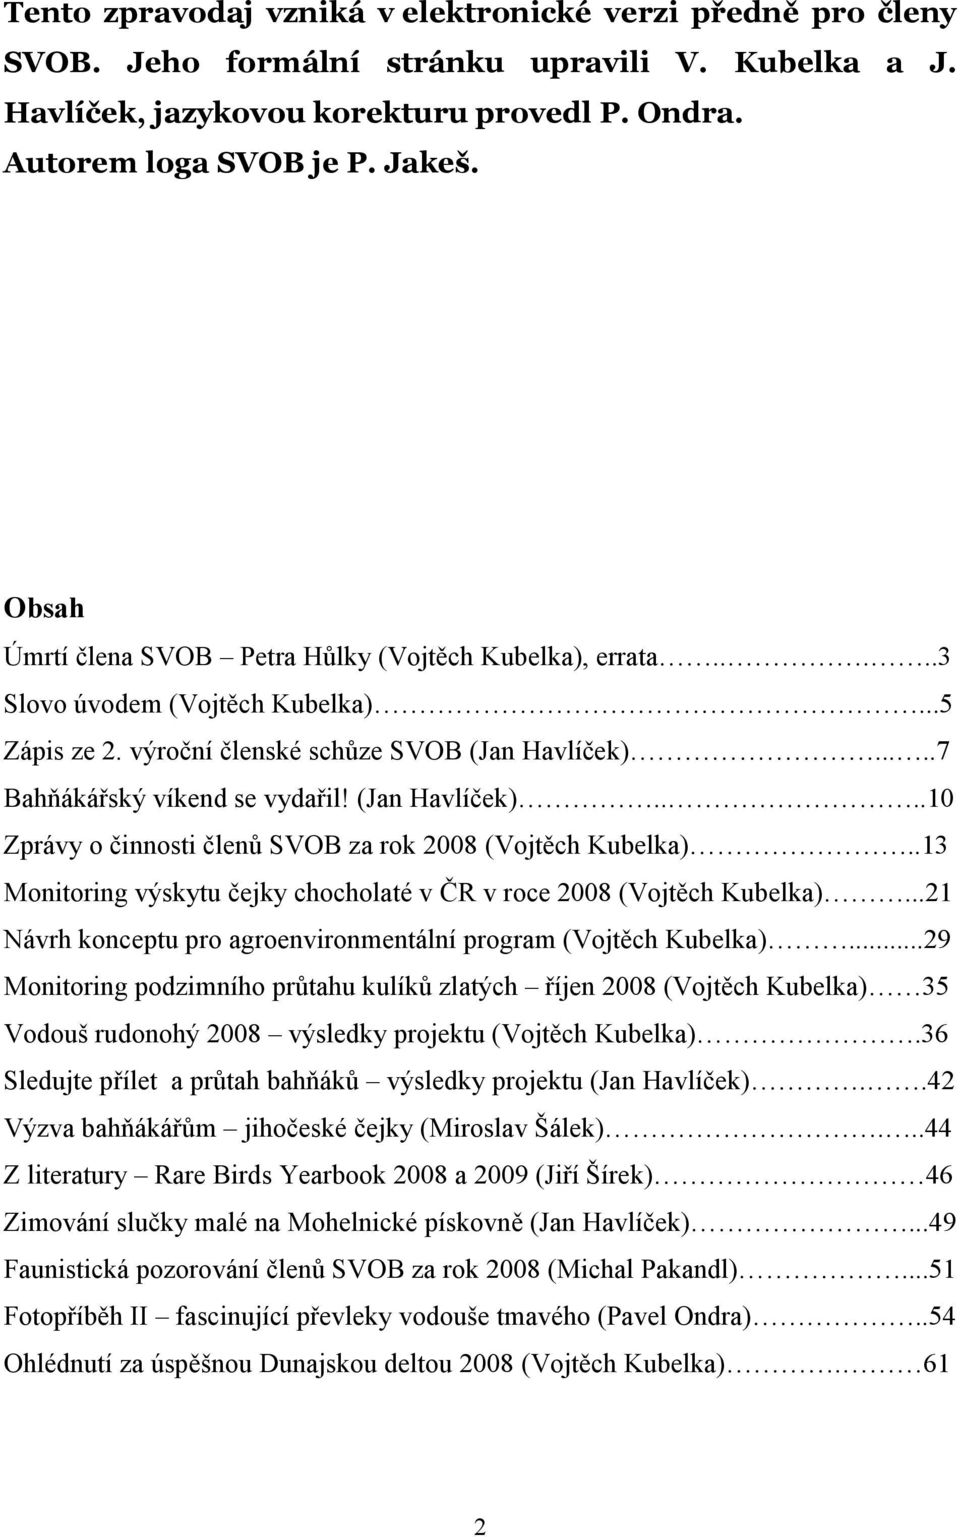 (Jan Havlíček)....10 Zprávy o činnosti členů SVOB za rok 2008 (Vojtěch Kubelka)..13 Monitoring výskytu čejky chocholaté v ČR v roce 2008 (Vojtěch Kubelka).